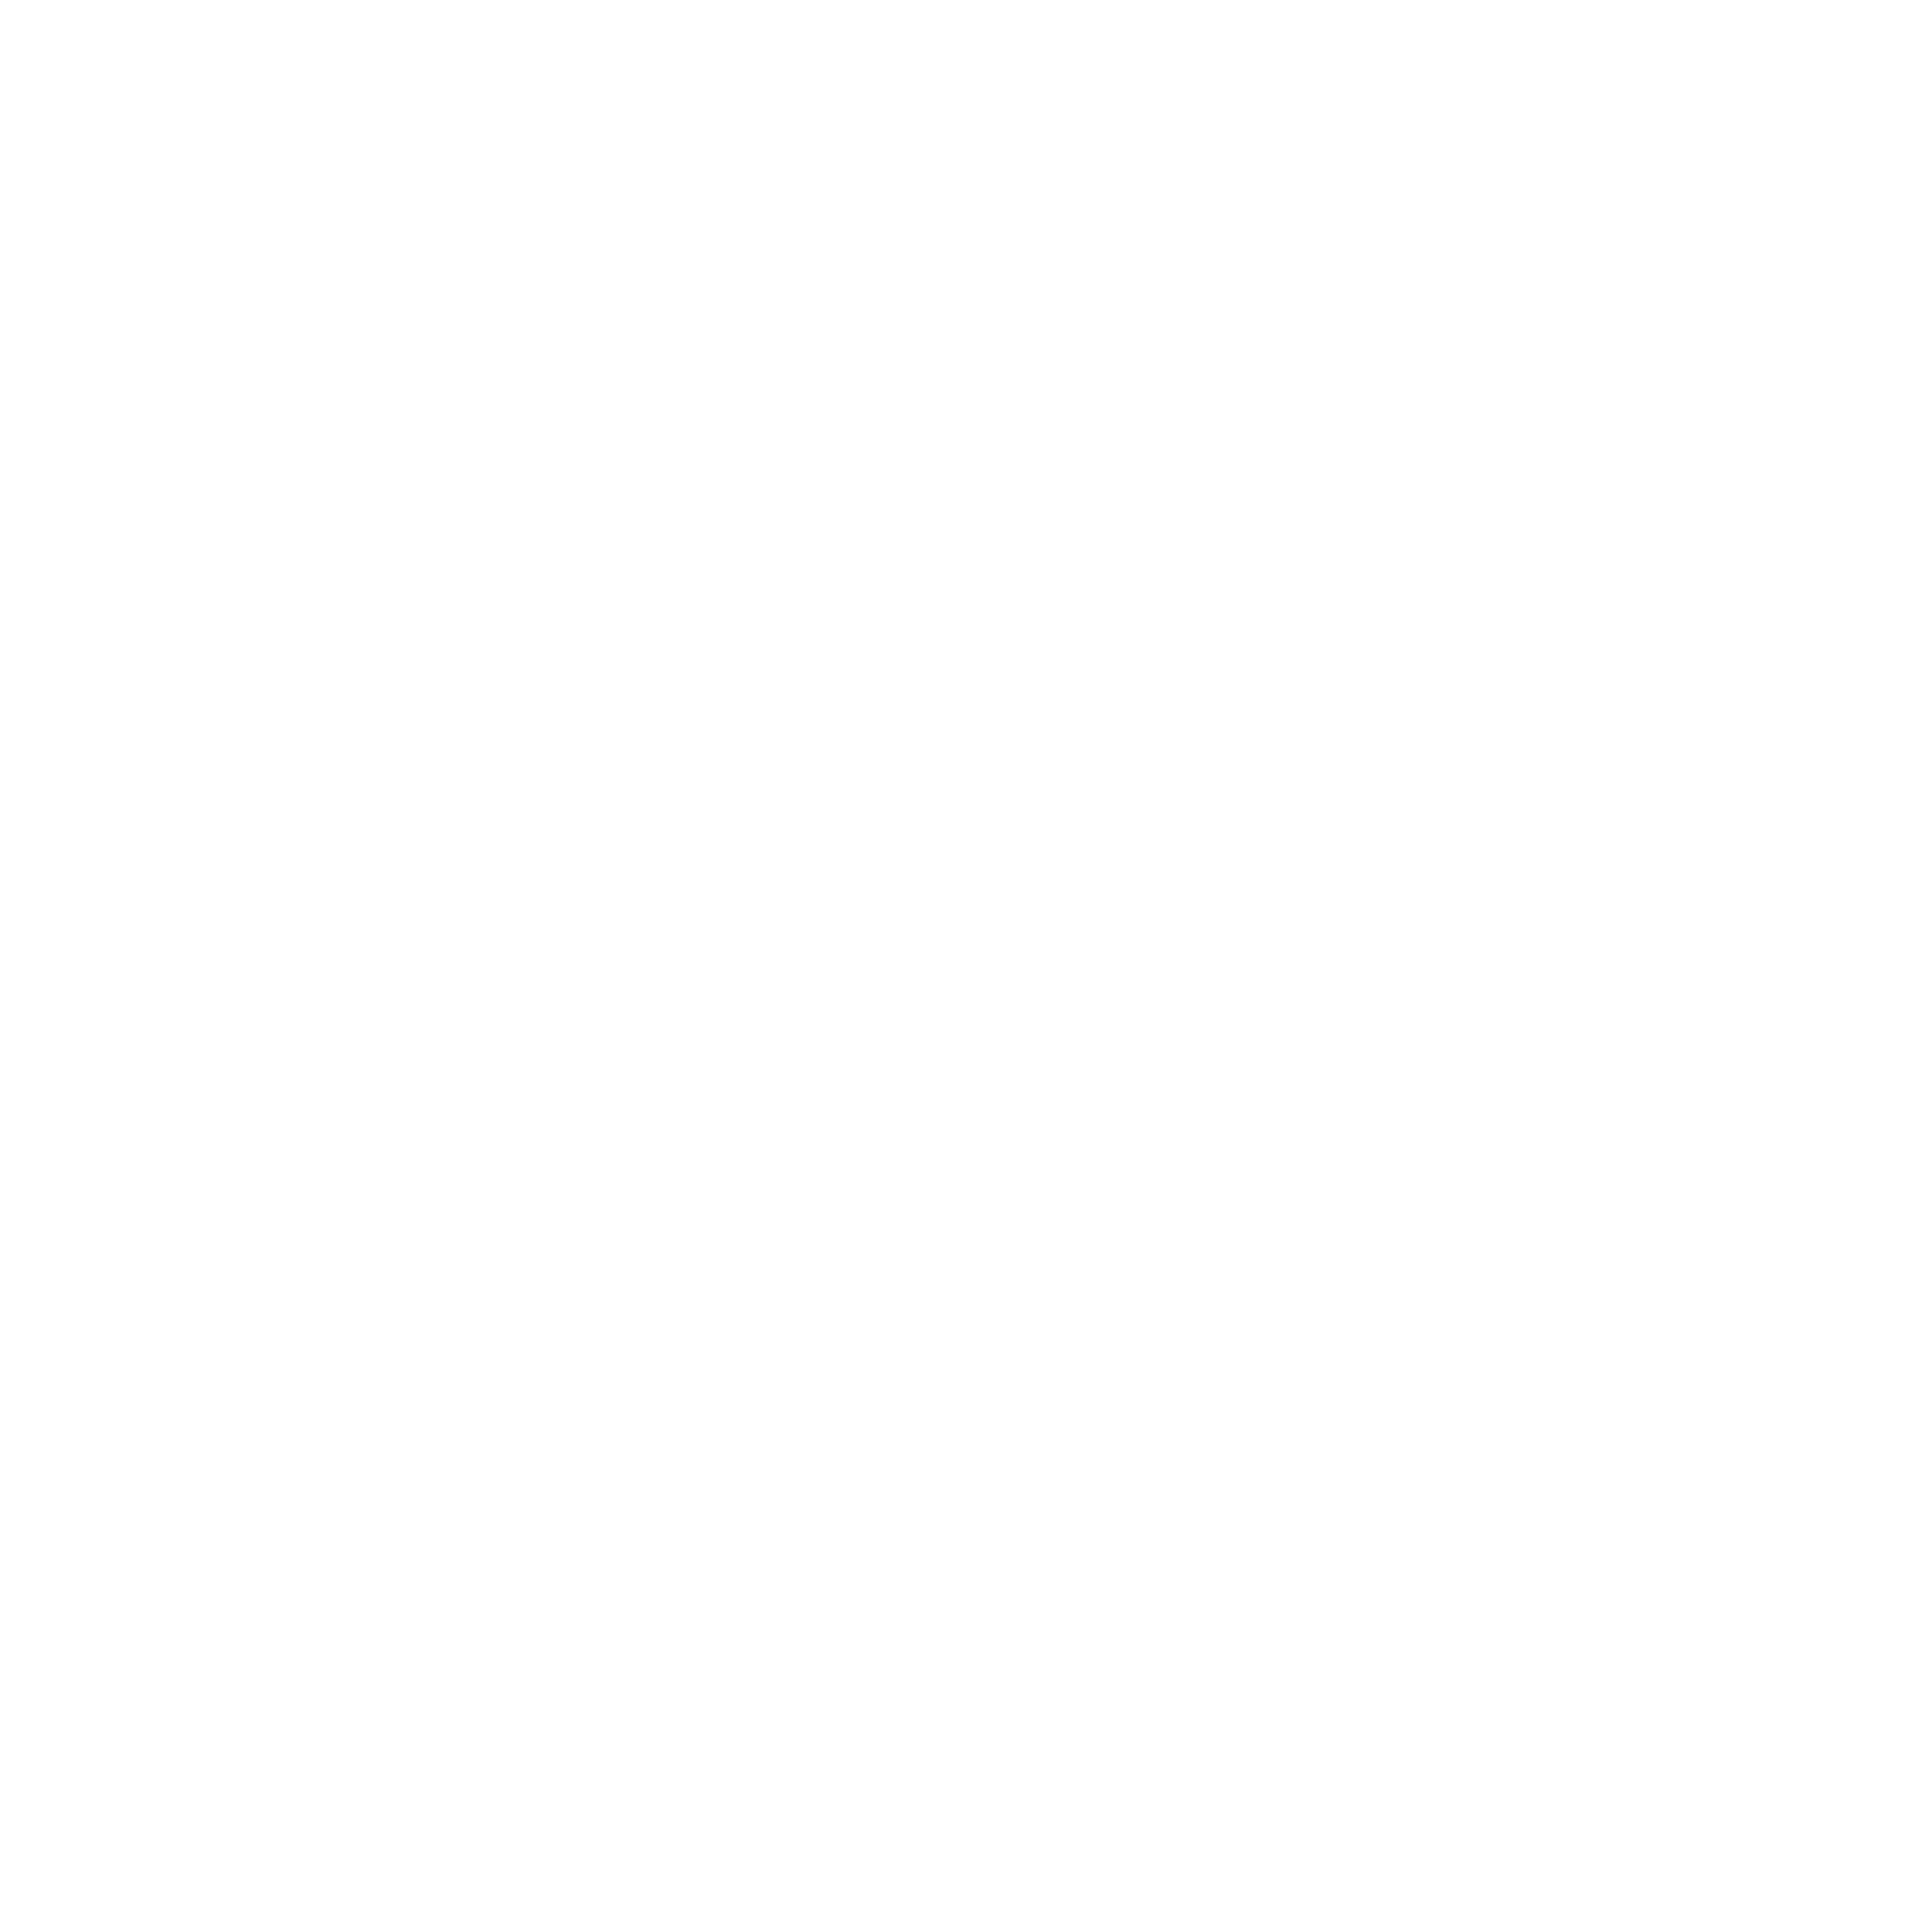 A letra Q